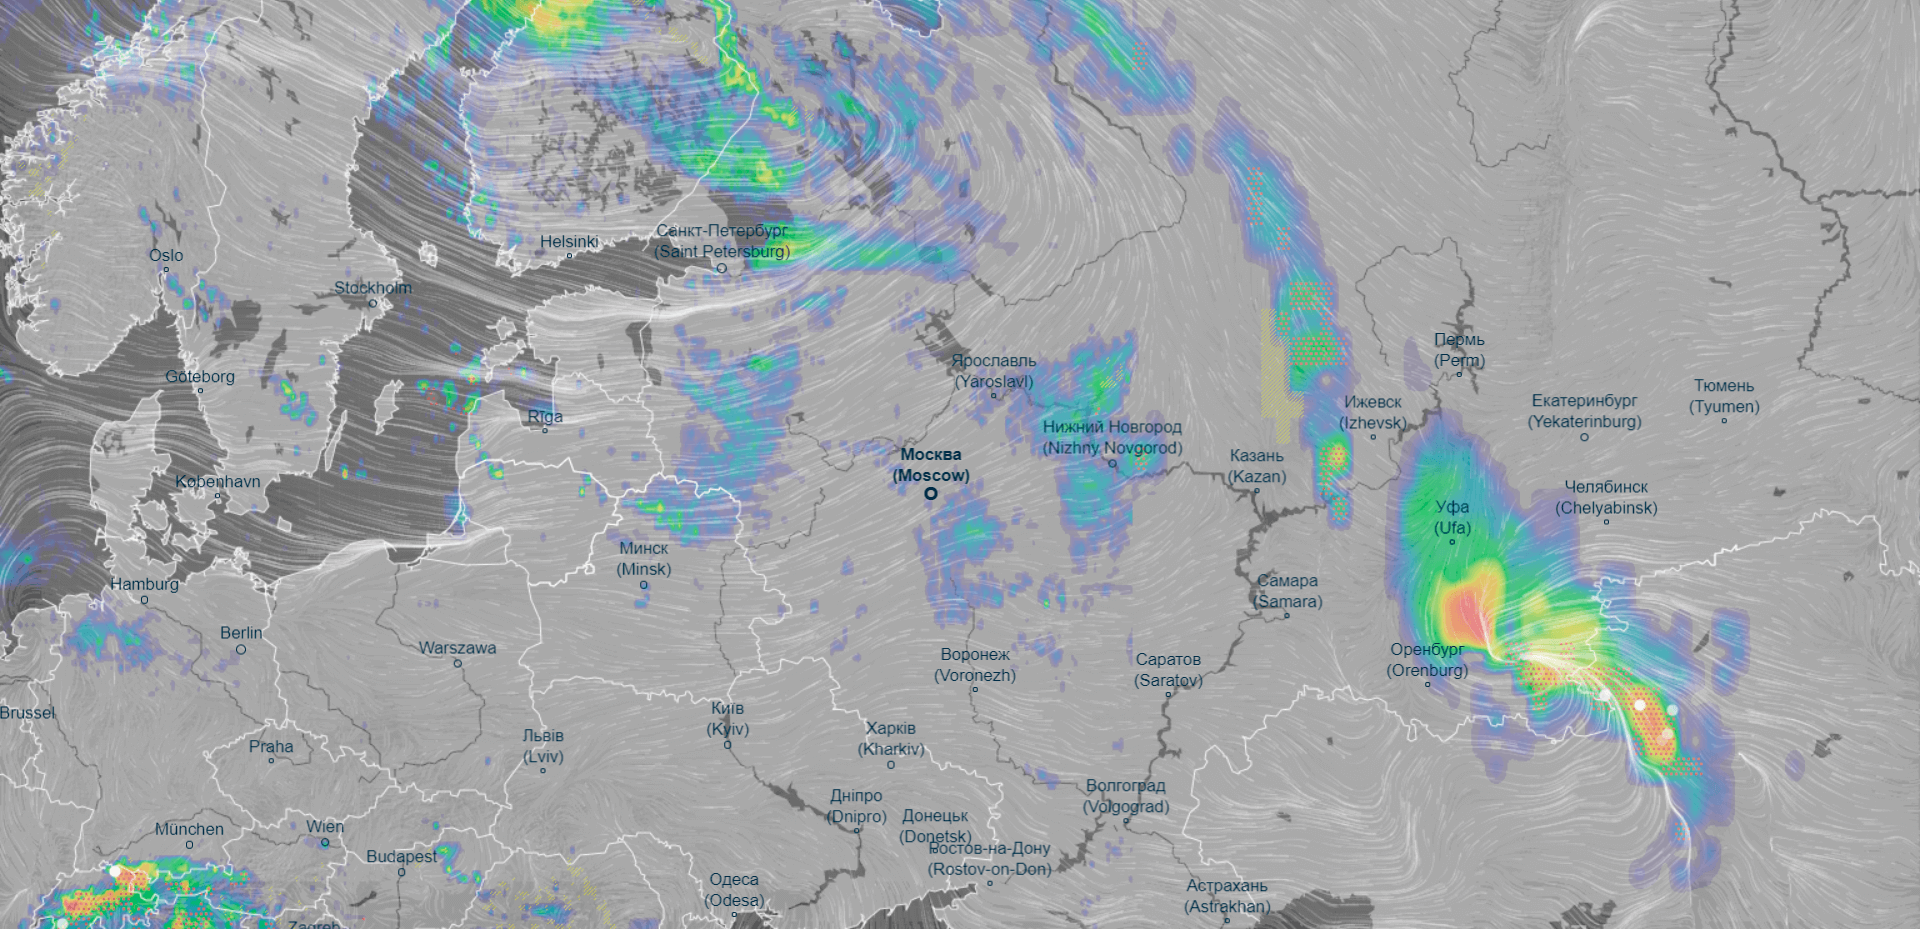 Дождь в реальном времени московская область. Осадки на карте в реальном. Дождь на карте в реальном времени. Осадки на карте в реальном времени. Карта туч в реальном времени.